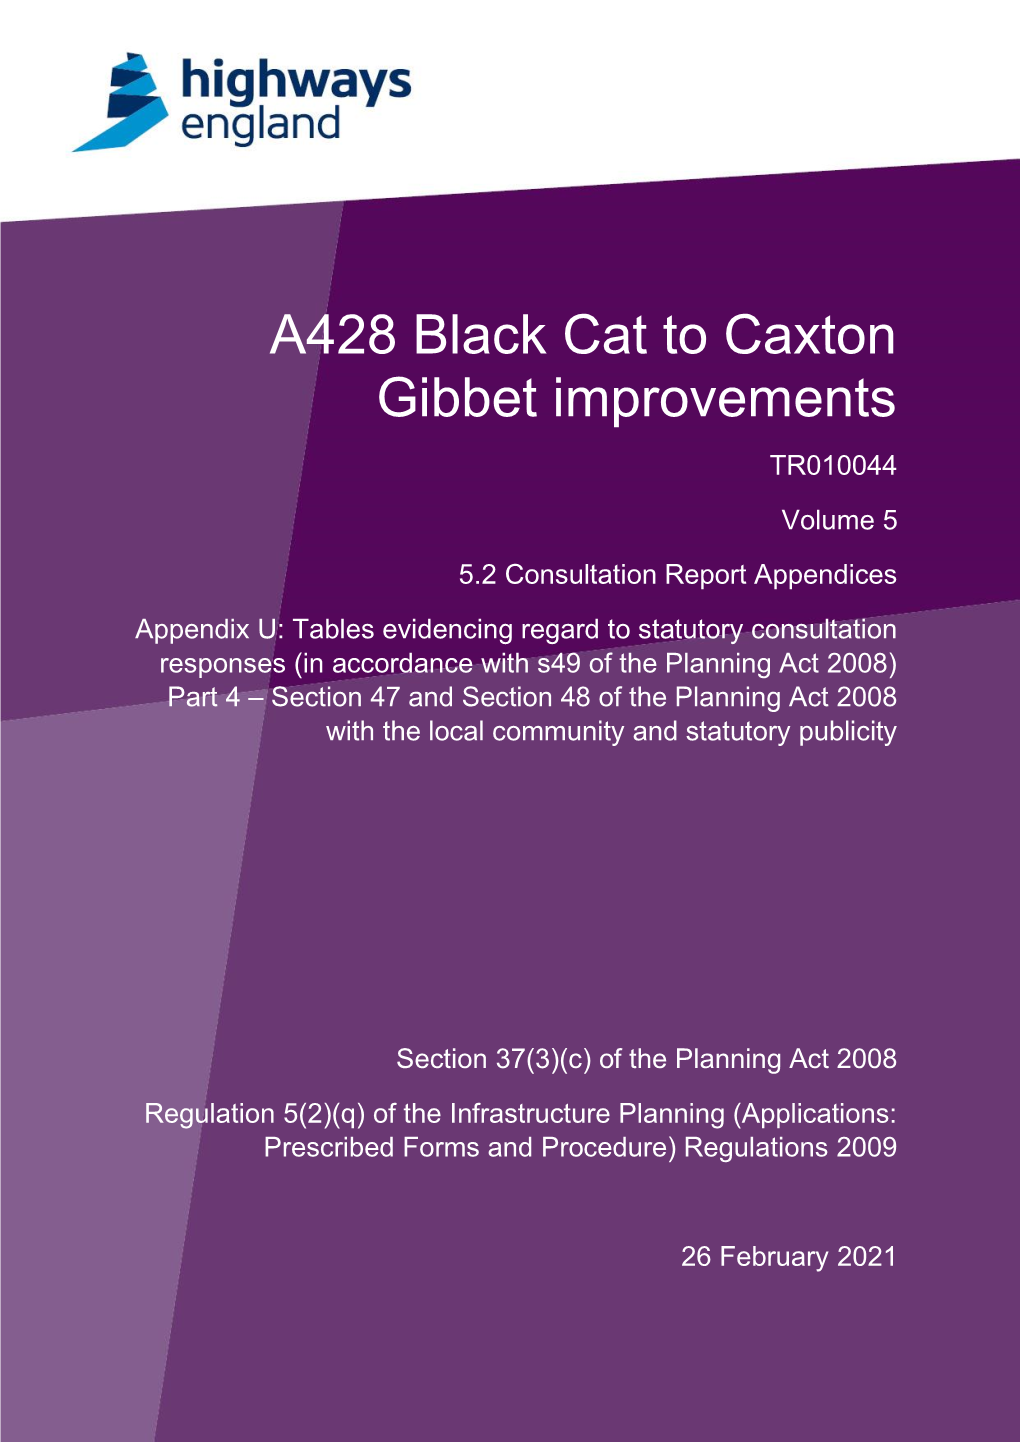 A428 Black Cat to Caxton Gibbet Improvements Consultation Report Appendix U